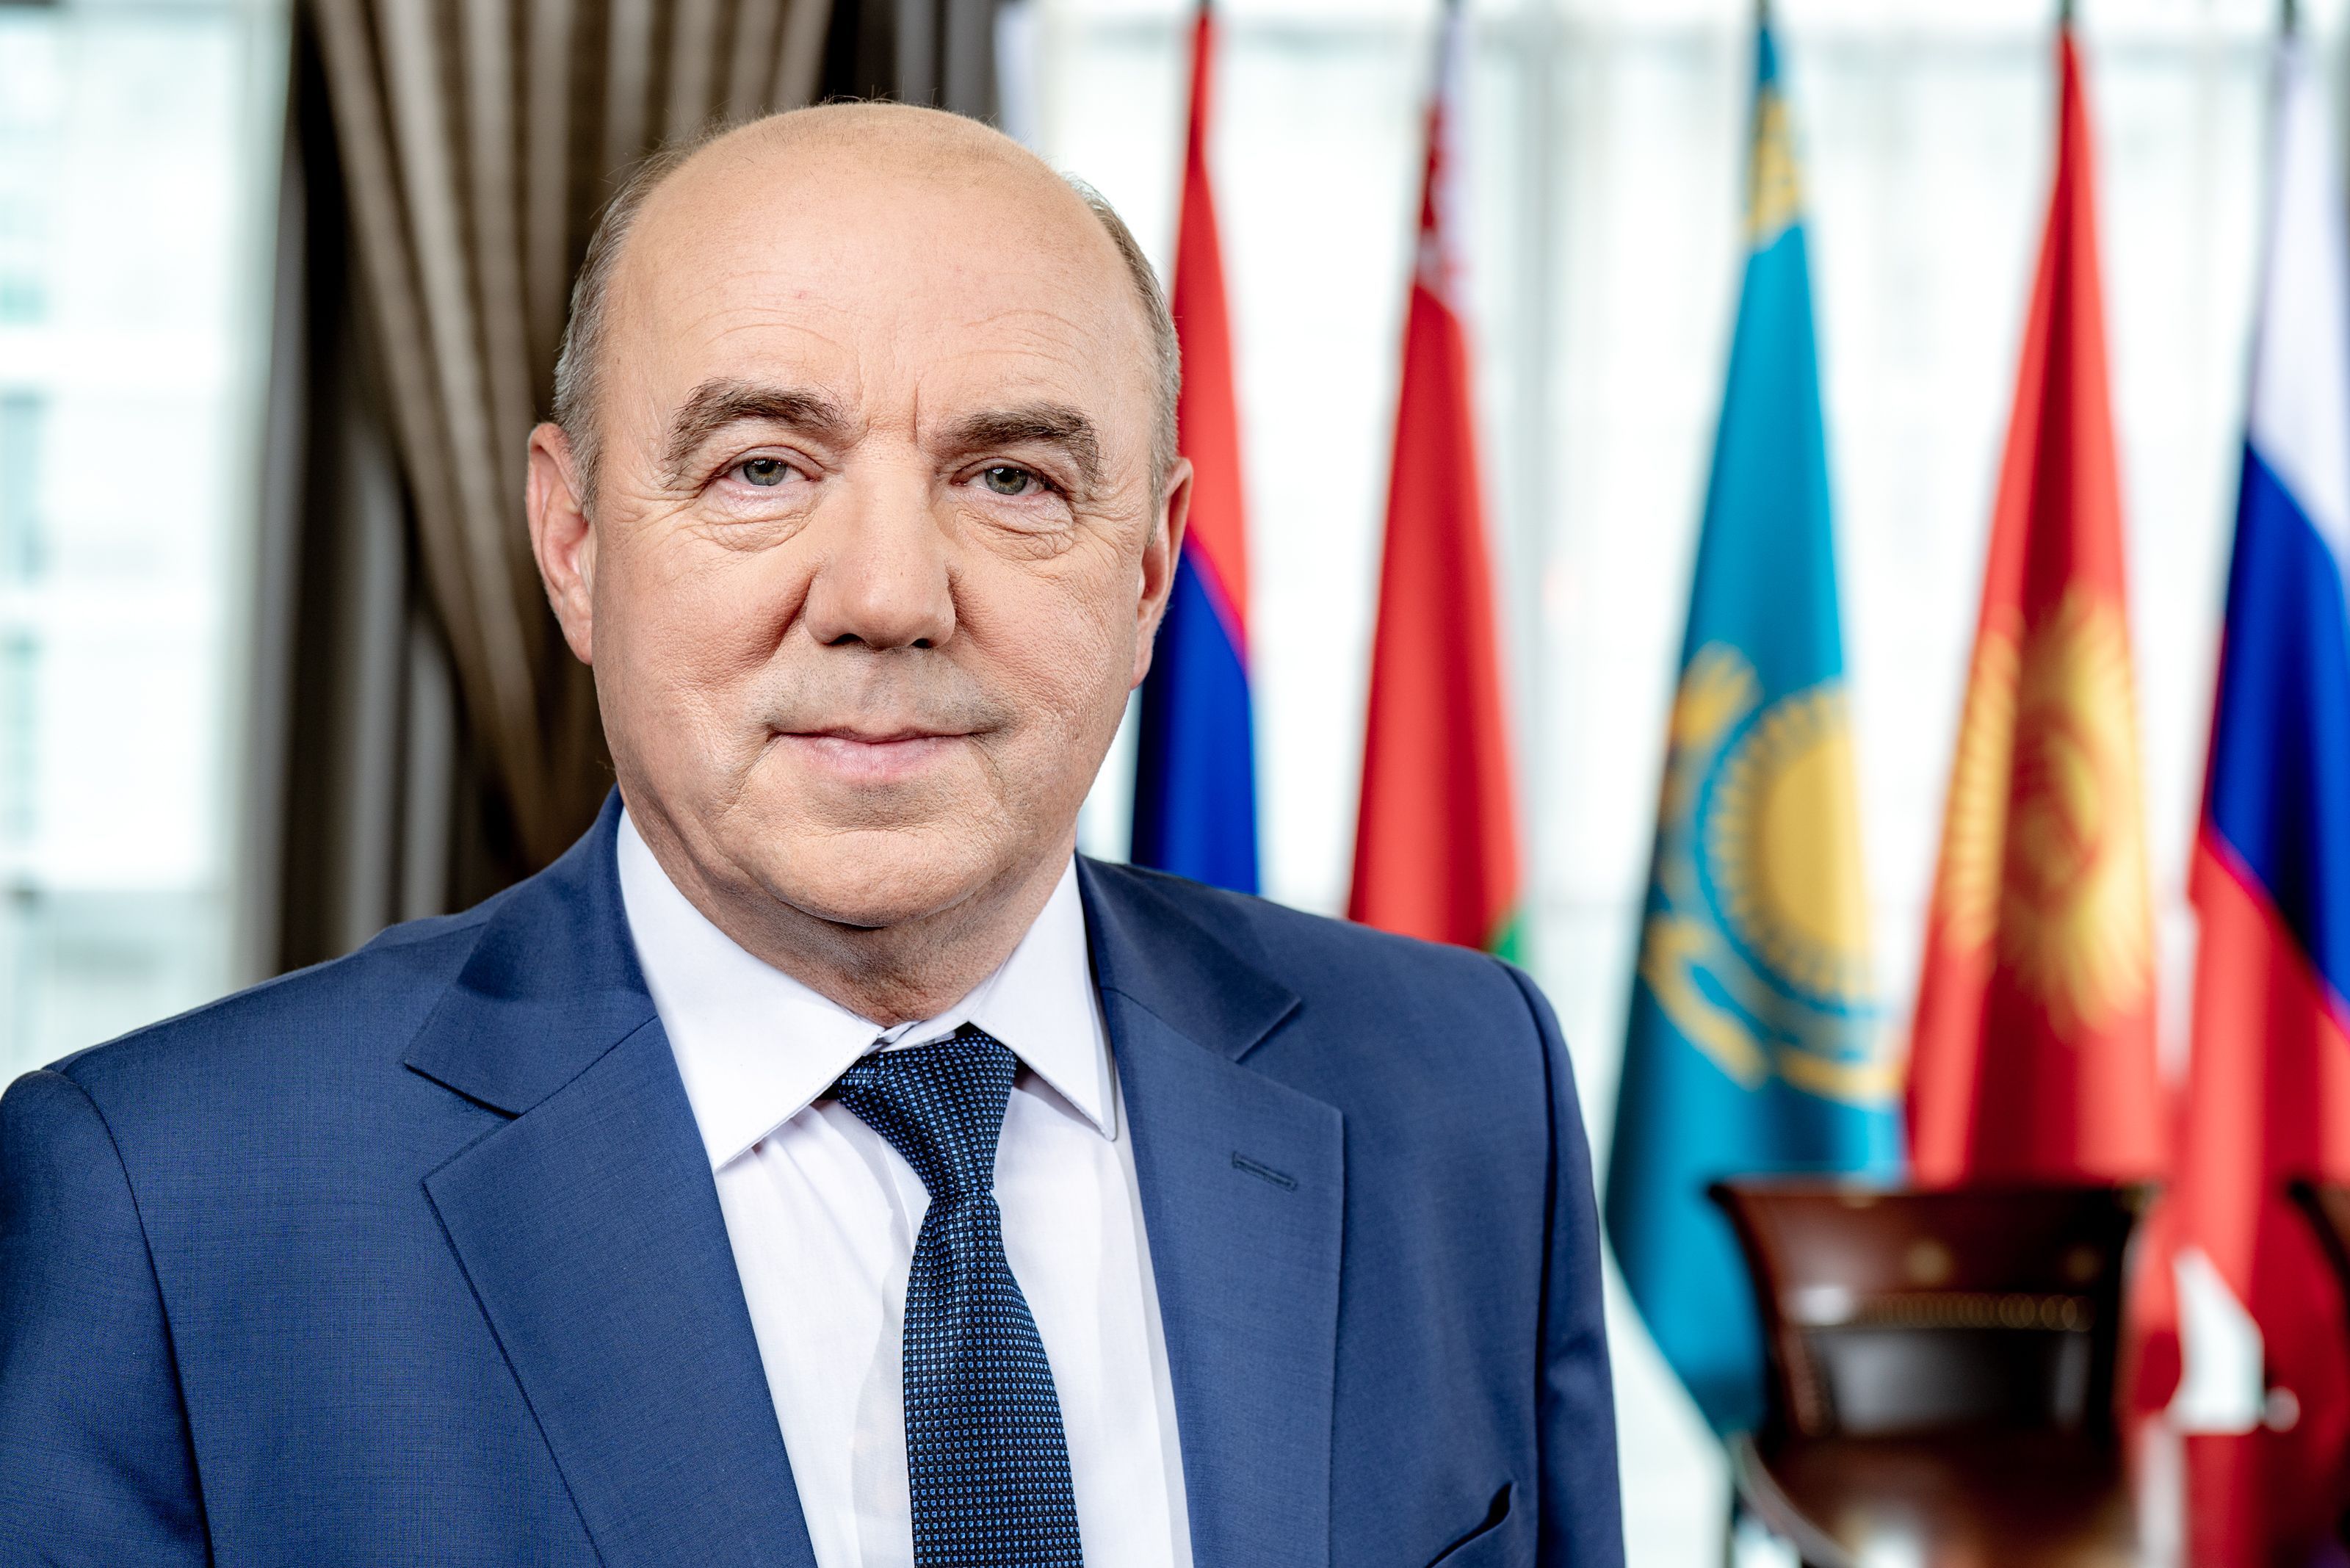 Фитосанитарная интеграция в Евразийском союзе повысит безопасность продуктов – министр ЕЭК